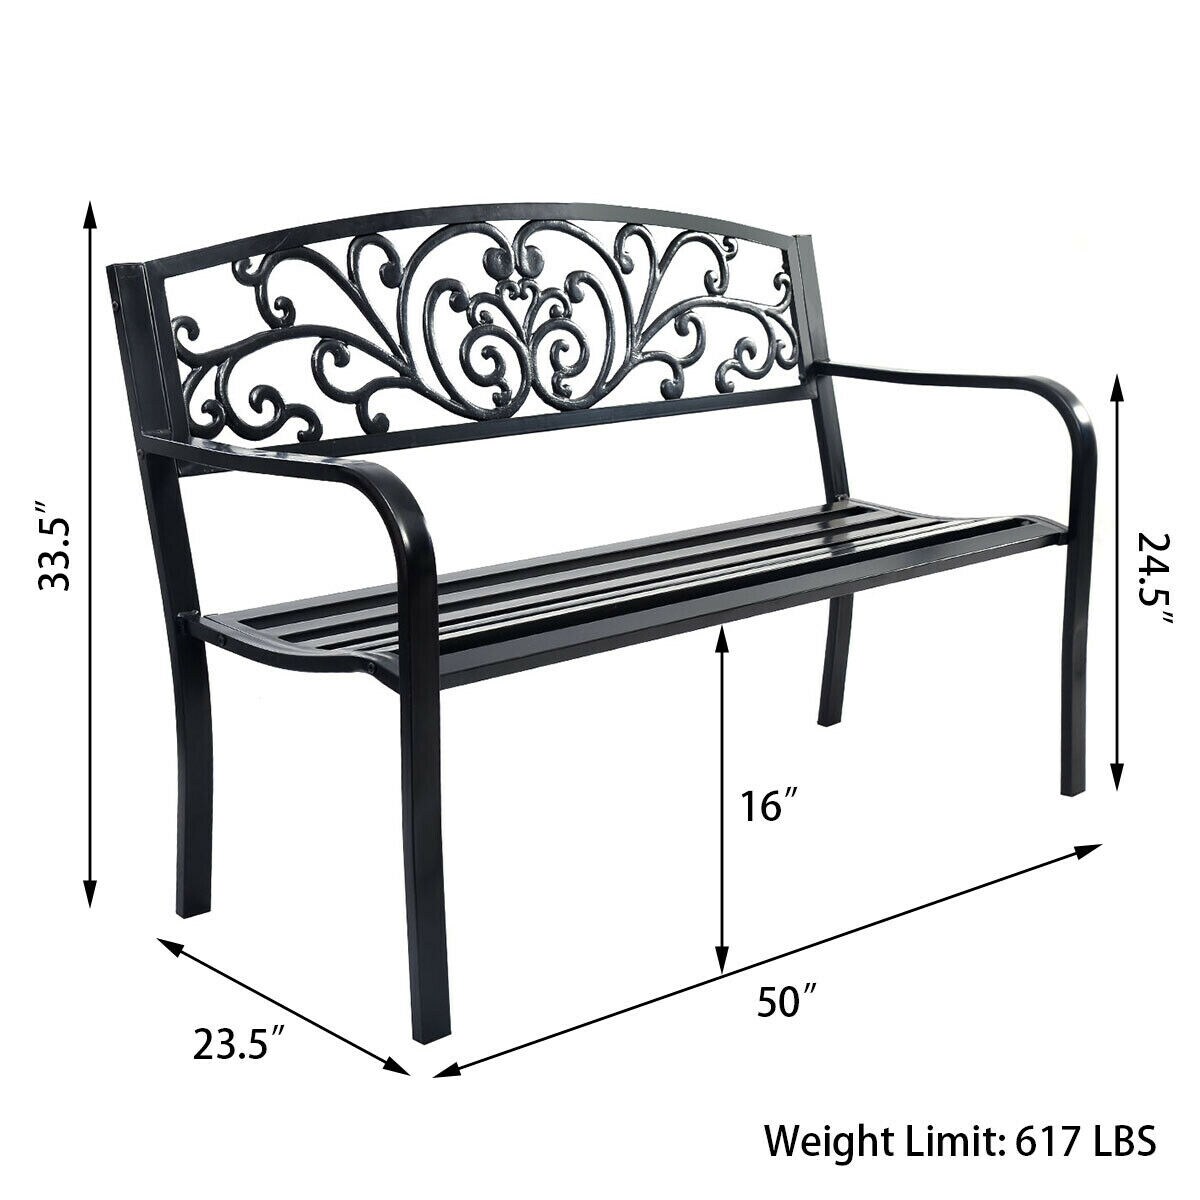 Clihome Outdoor Patio Park Bench 50-in W x 33.5-in H Black Steel Garden ...